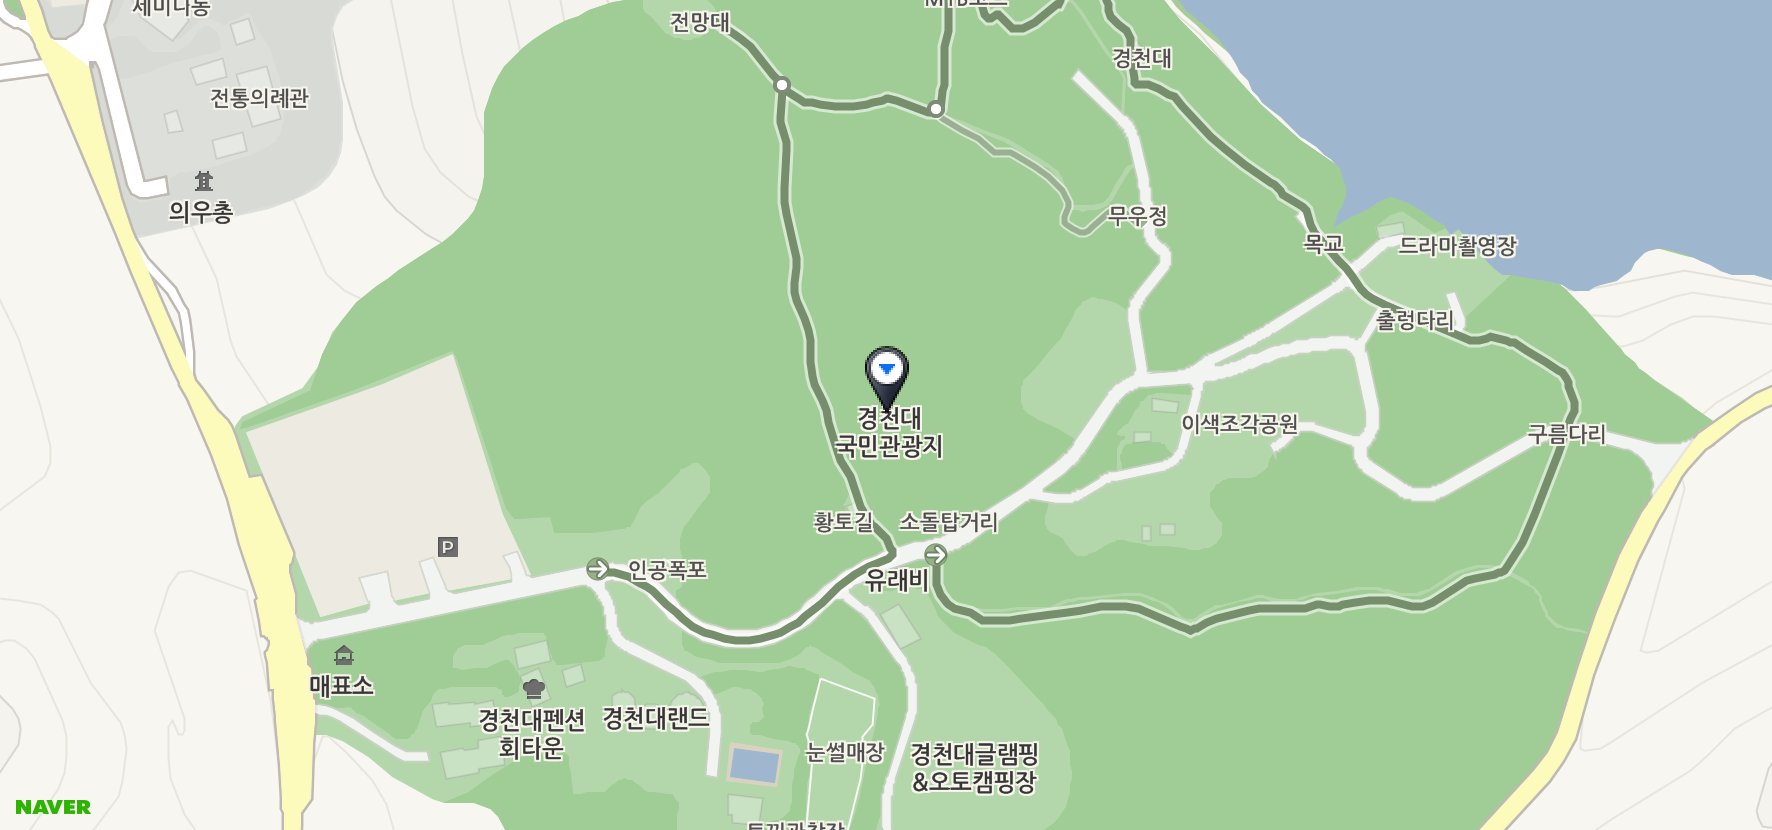 홍차와 우유의 향긋한 조화, 서울 밀크티 맛집 4